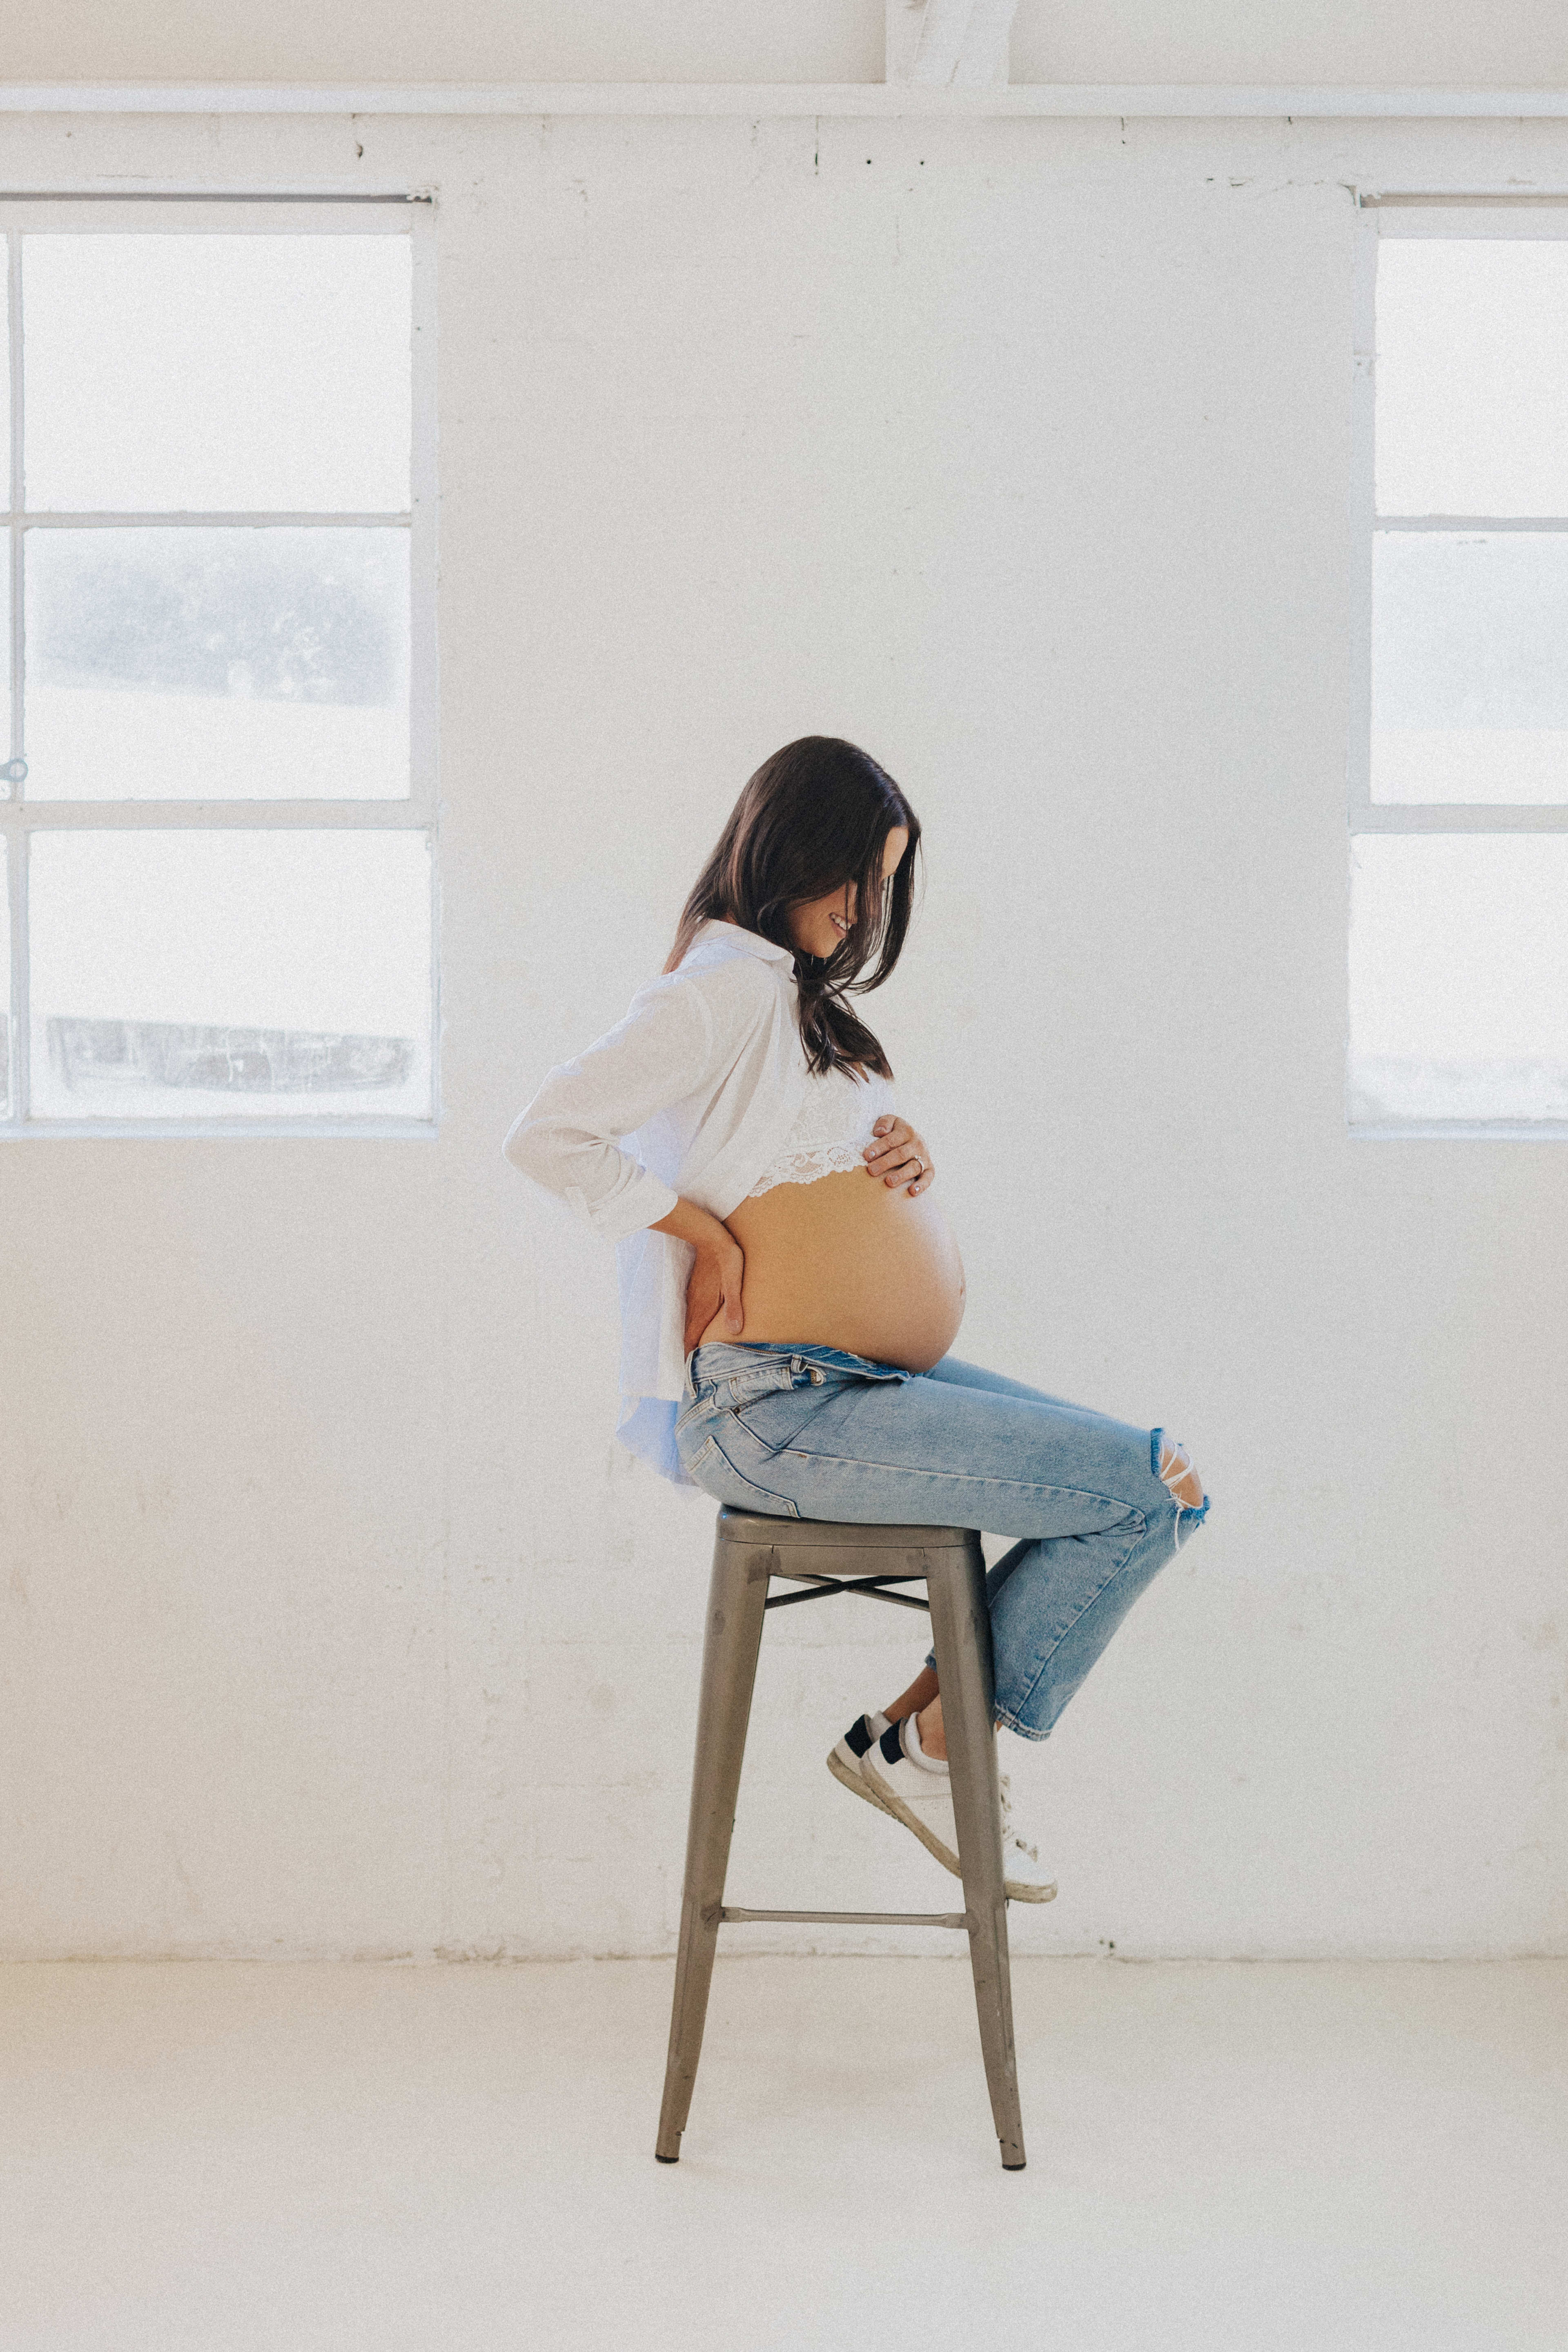 Una sesión de fotos de una mujer embarazada en un taburete blanco con un decorado minimalista.